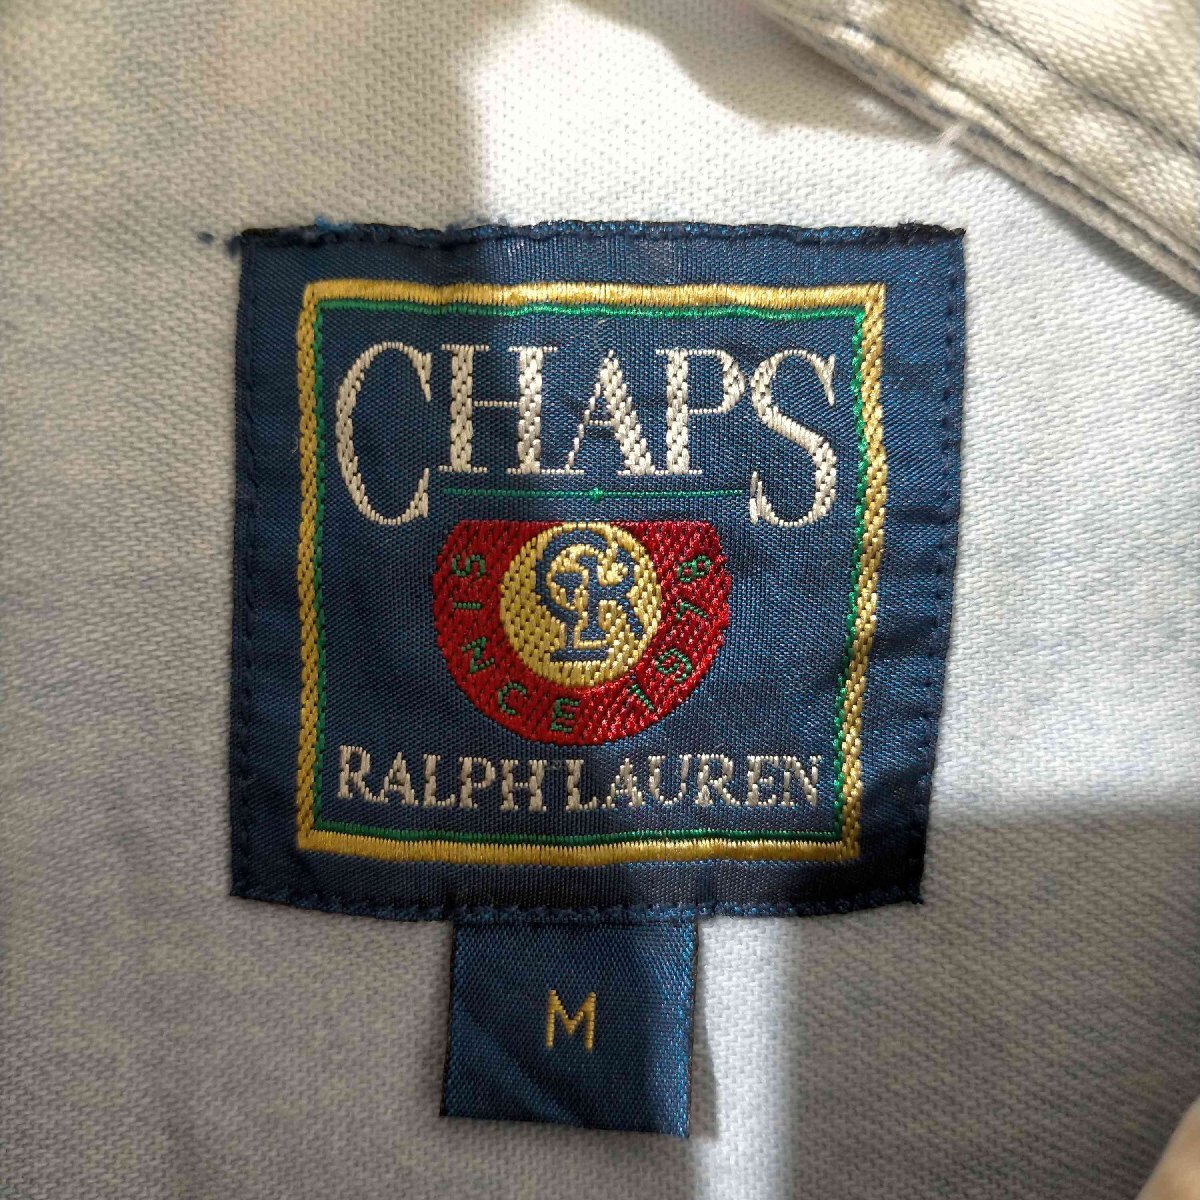 CHAPS RALPH LAUREN(チャップスラルフローレン) パッチワーク BDシャツ メンズ imp 中古 古着 0602_画像6